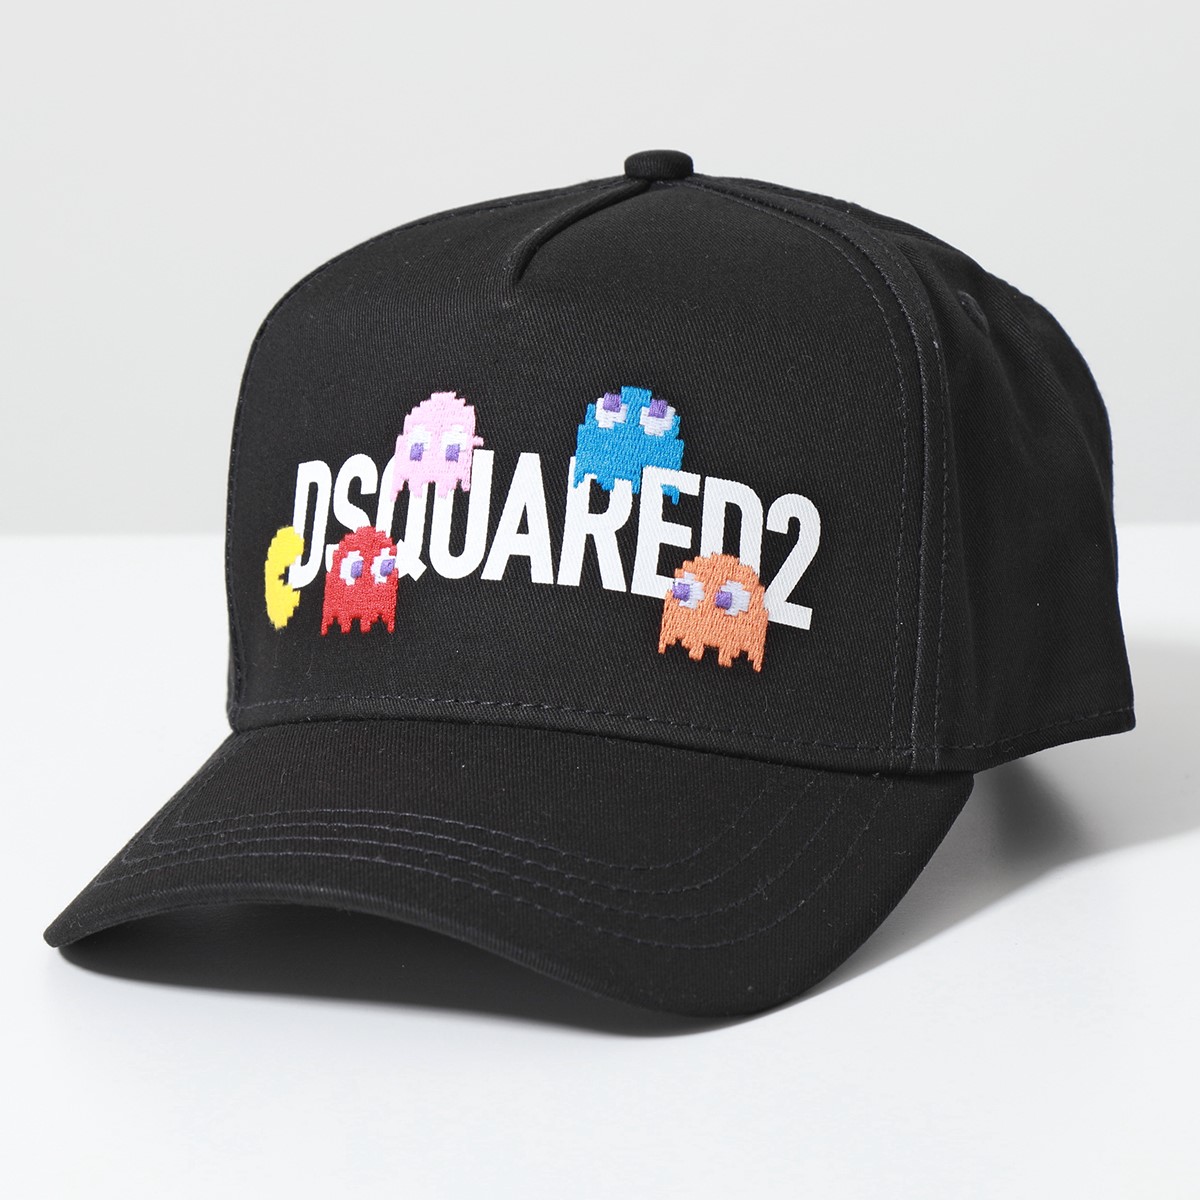 DSQUARED2 ディースクエアード ベースボールキャップ BCM0750 05C00001 メンズ パックマン 刺繍 コットン ロゴ 帽子  カラー2色